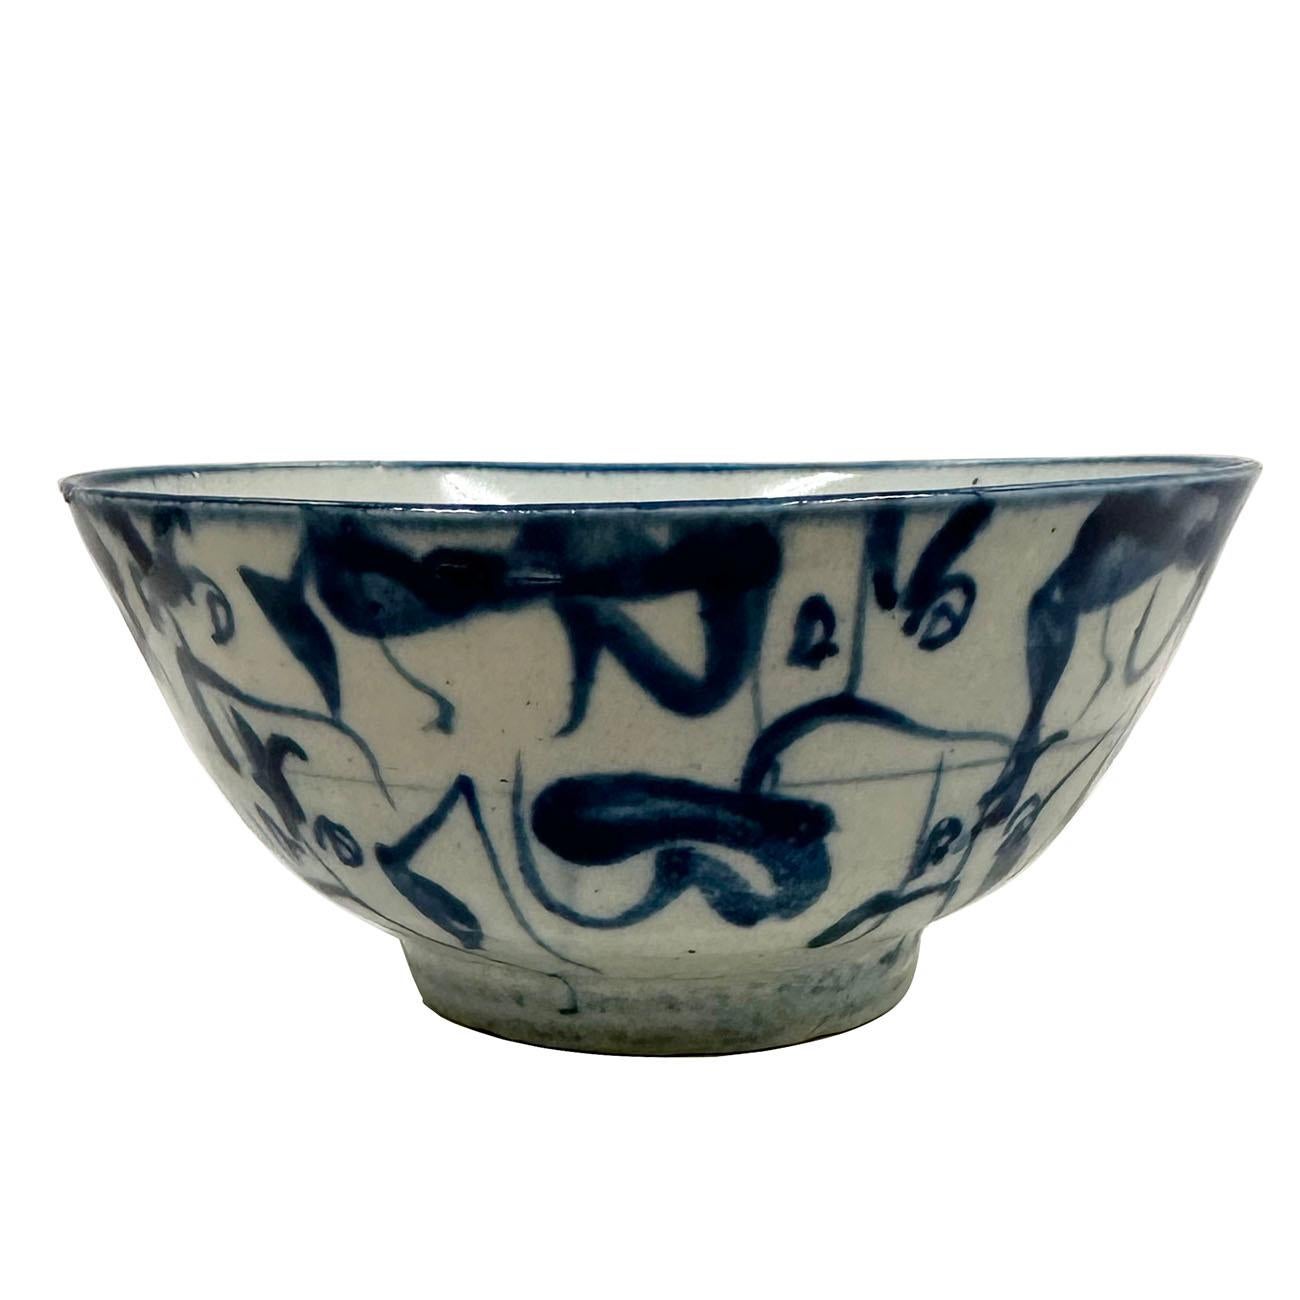 Dies ist eine antike chinesische blau-weiße Porzellanschale. Wie Sie auf den Bildern sehen können, ist es in sehr gutem Zustand. Es zeigt sehr ordentlich einzigartige Design auf sie. Auf der Unterseite befindet sich das Zeichen 